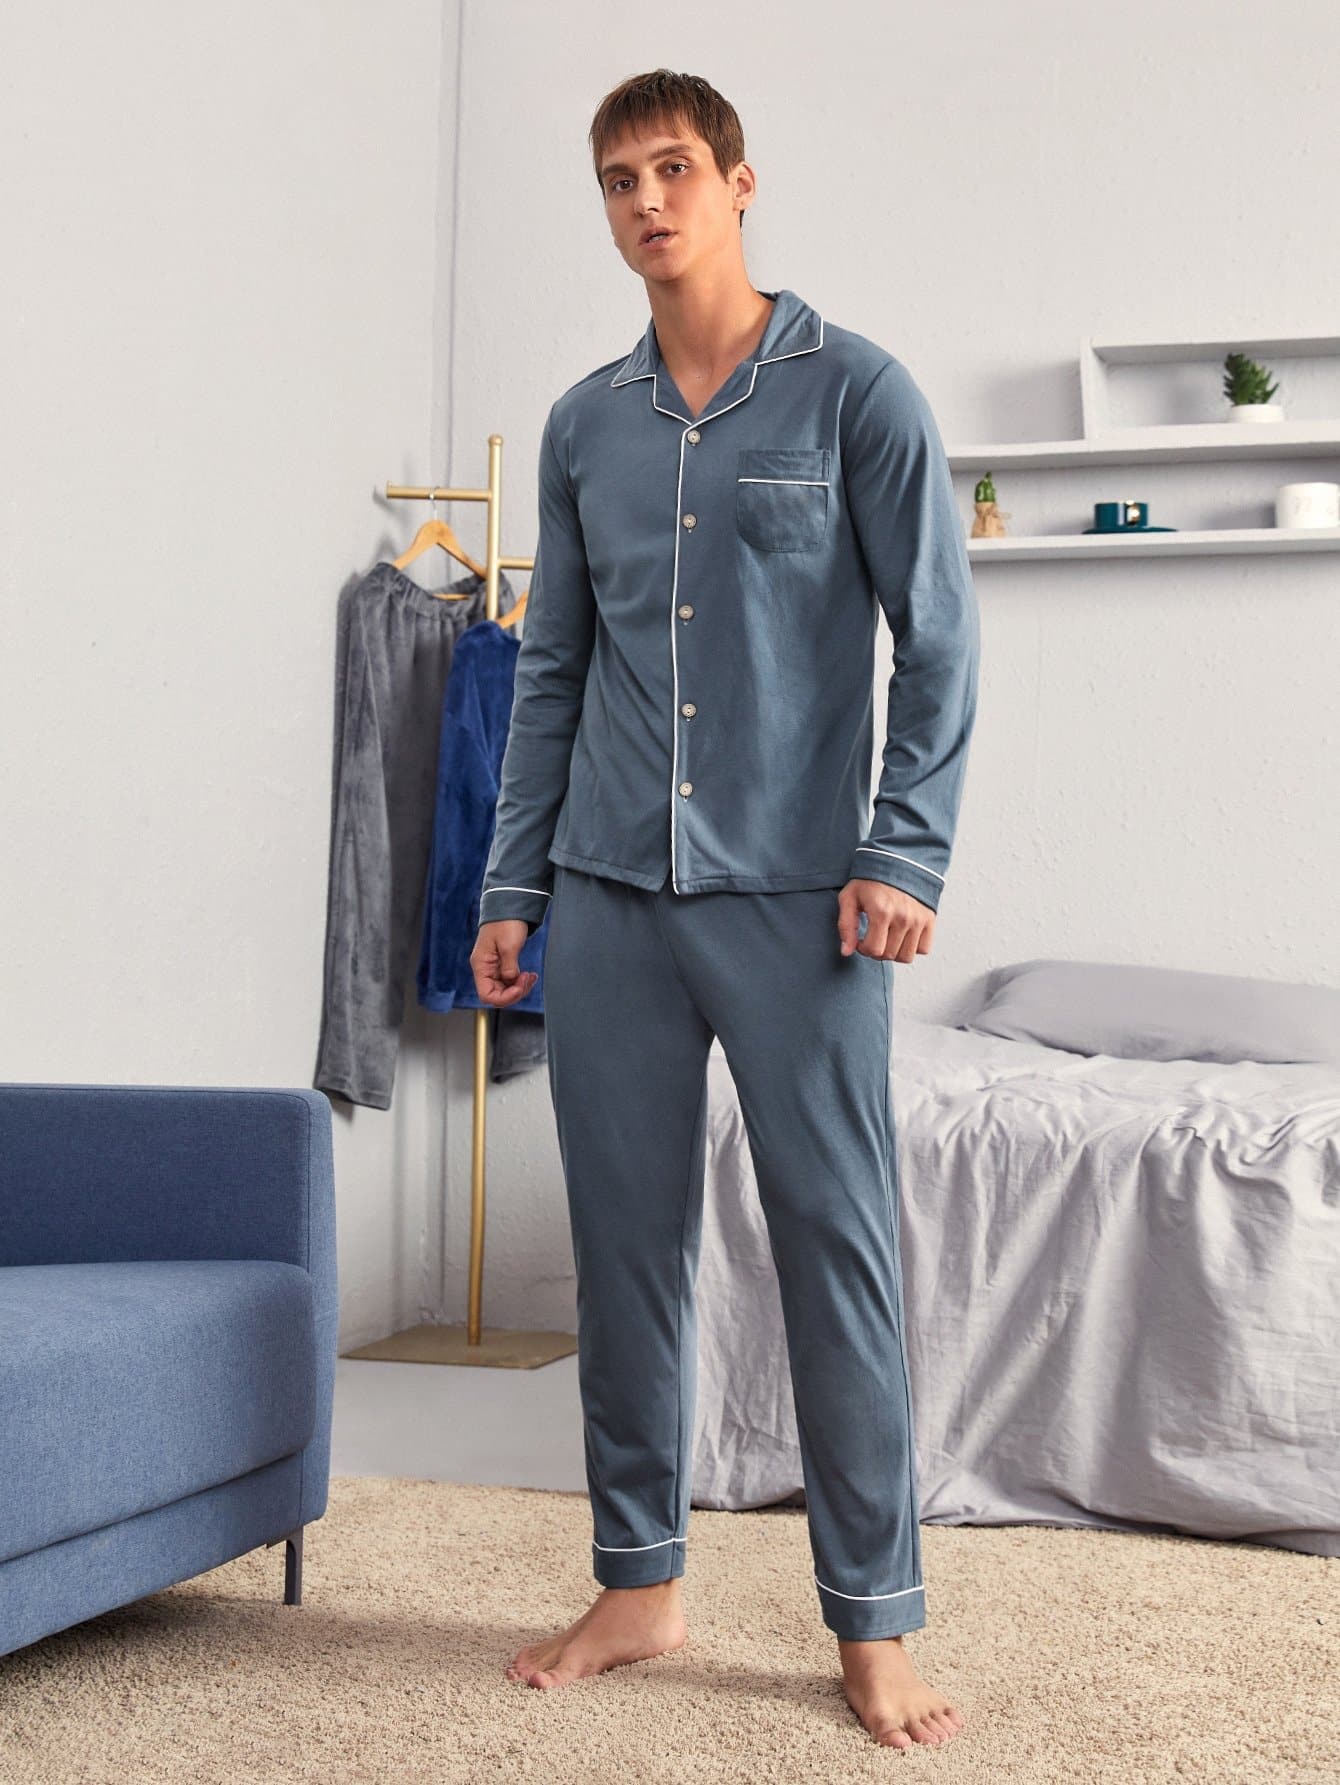 Dusty Blue Contrast Binding Button Front Pyjama Sleepwear Set